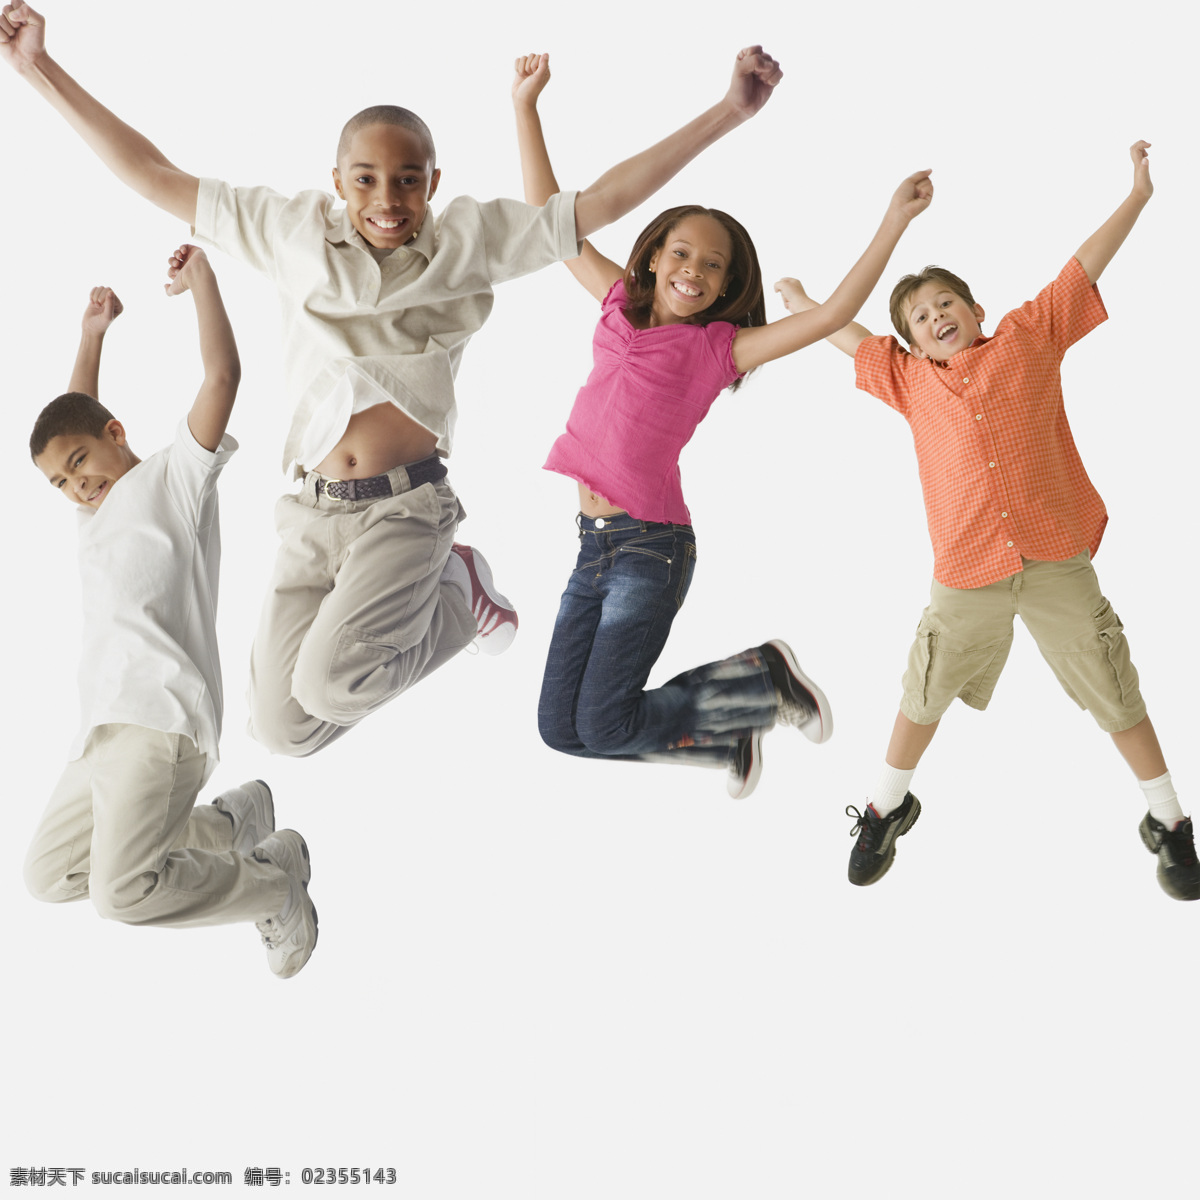 跳跃 孩子 跳舞 成功 成长 高举双手 开心 兴奋 生活人物 人物图片